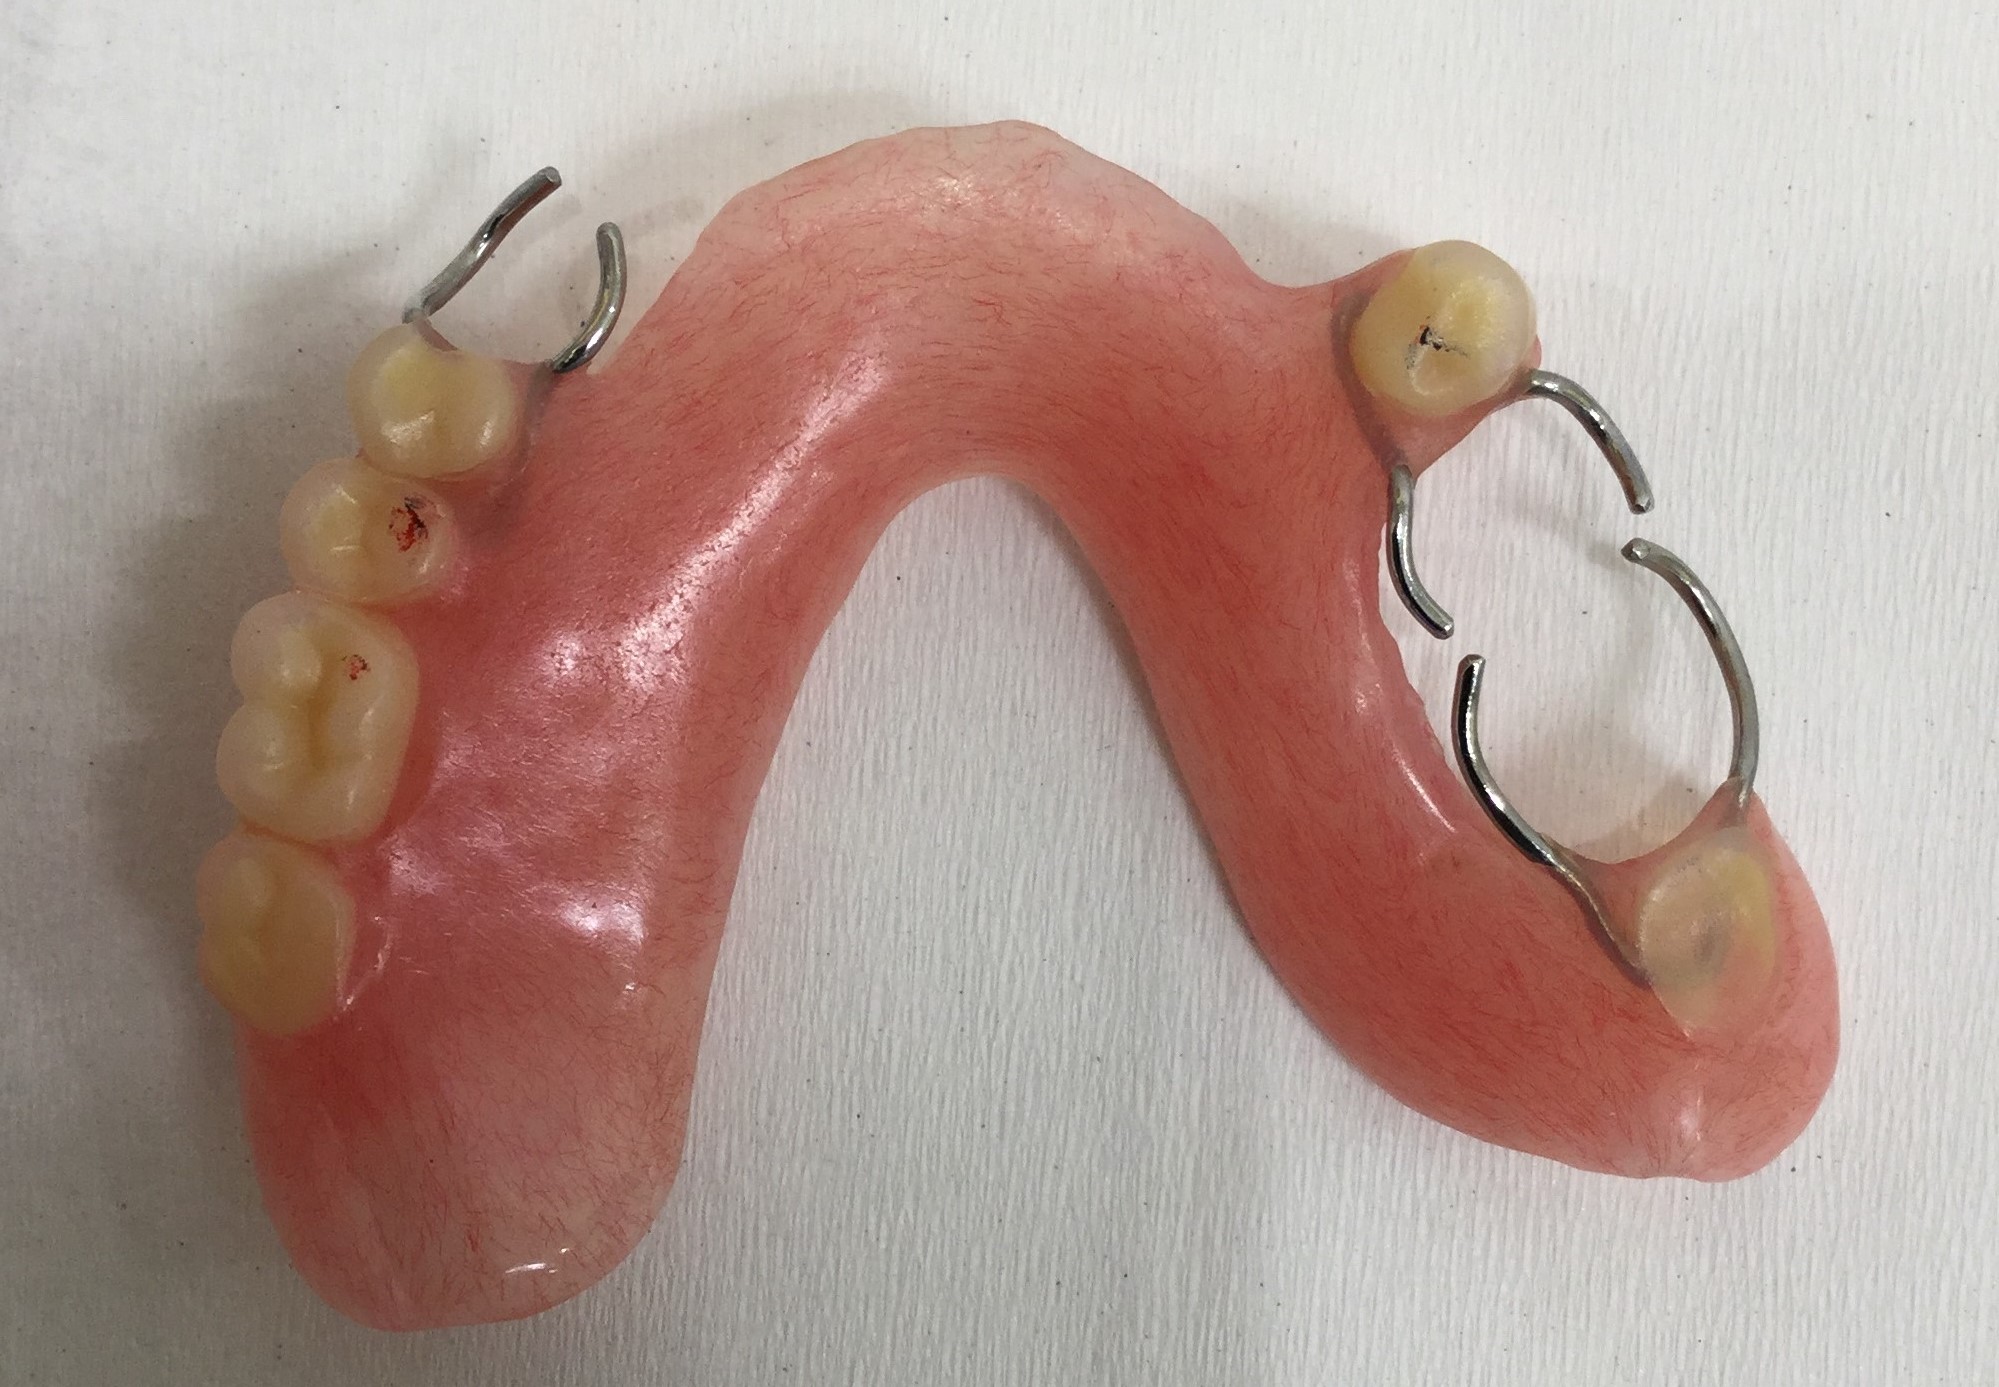 ドイツ式入れ歯と保険適用のバネ式入れ歯の比較